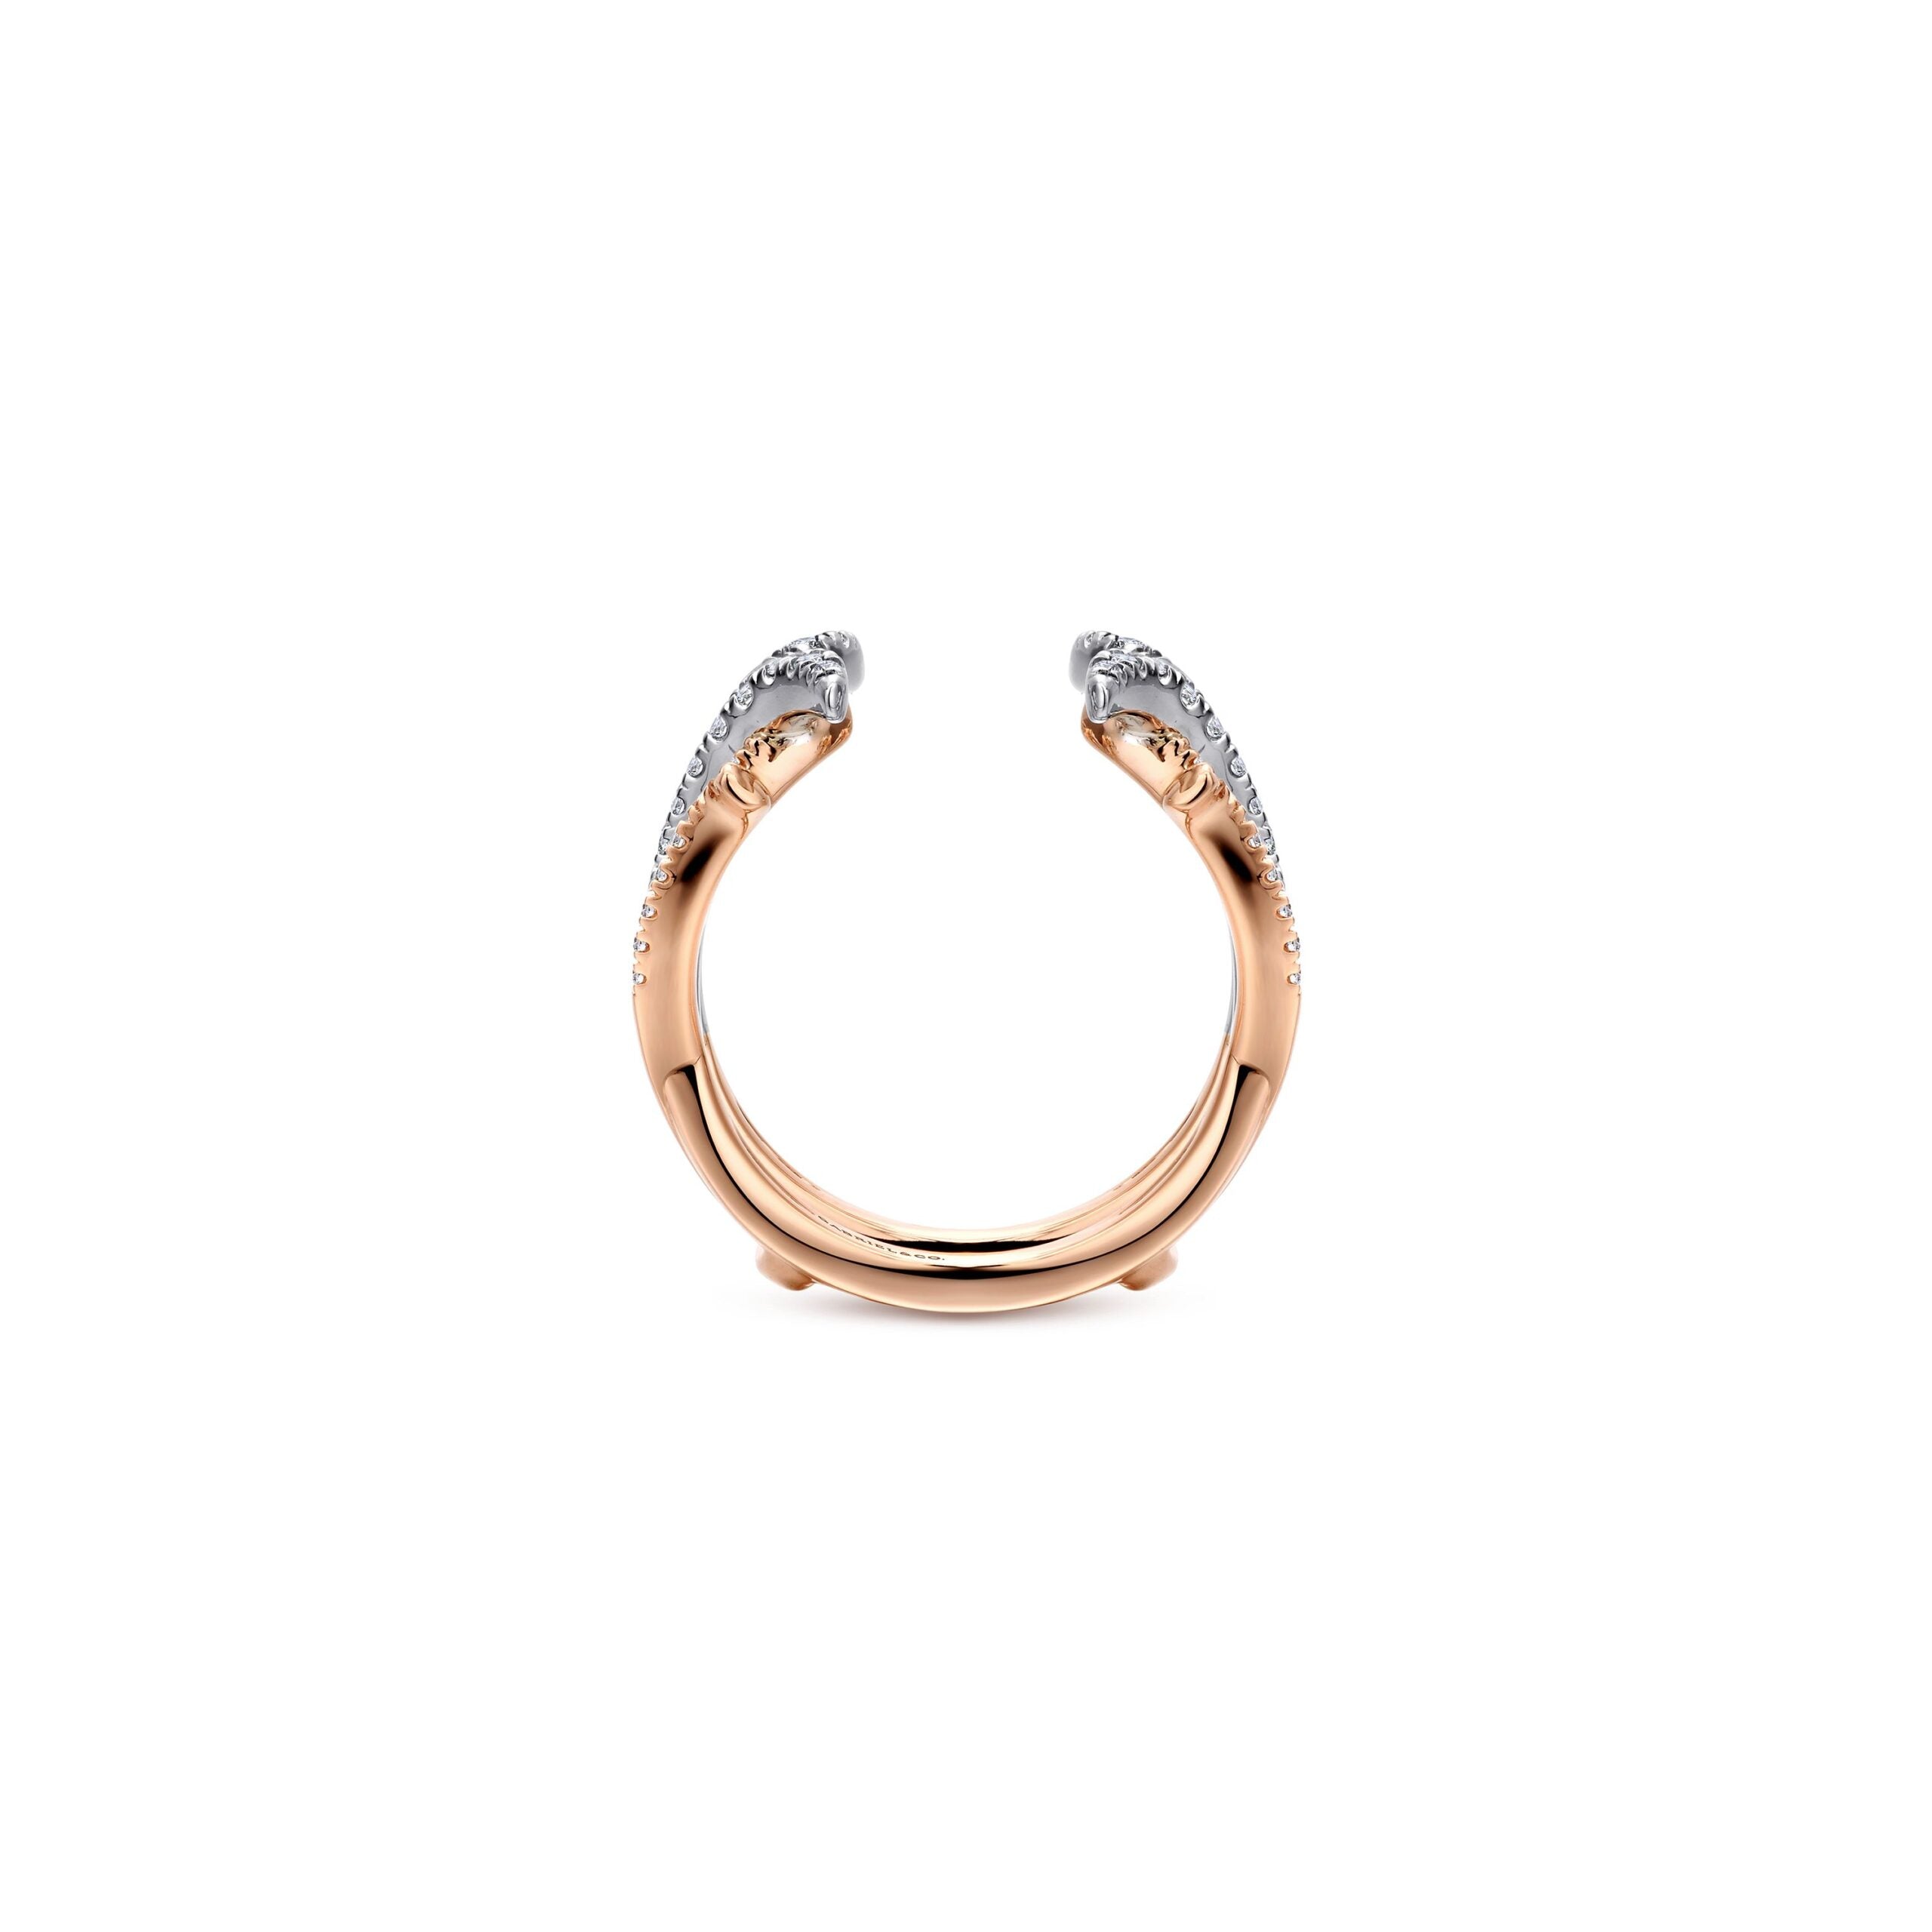 14K White and Rose Gold Diamond Ring Enhancer